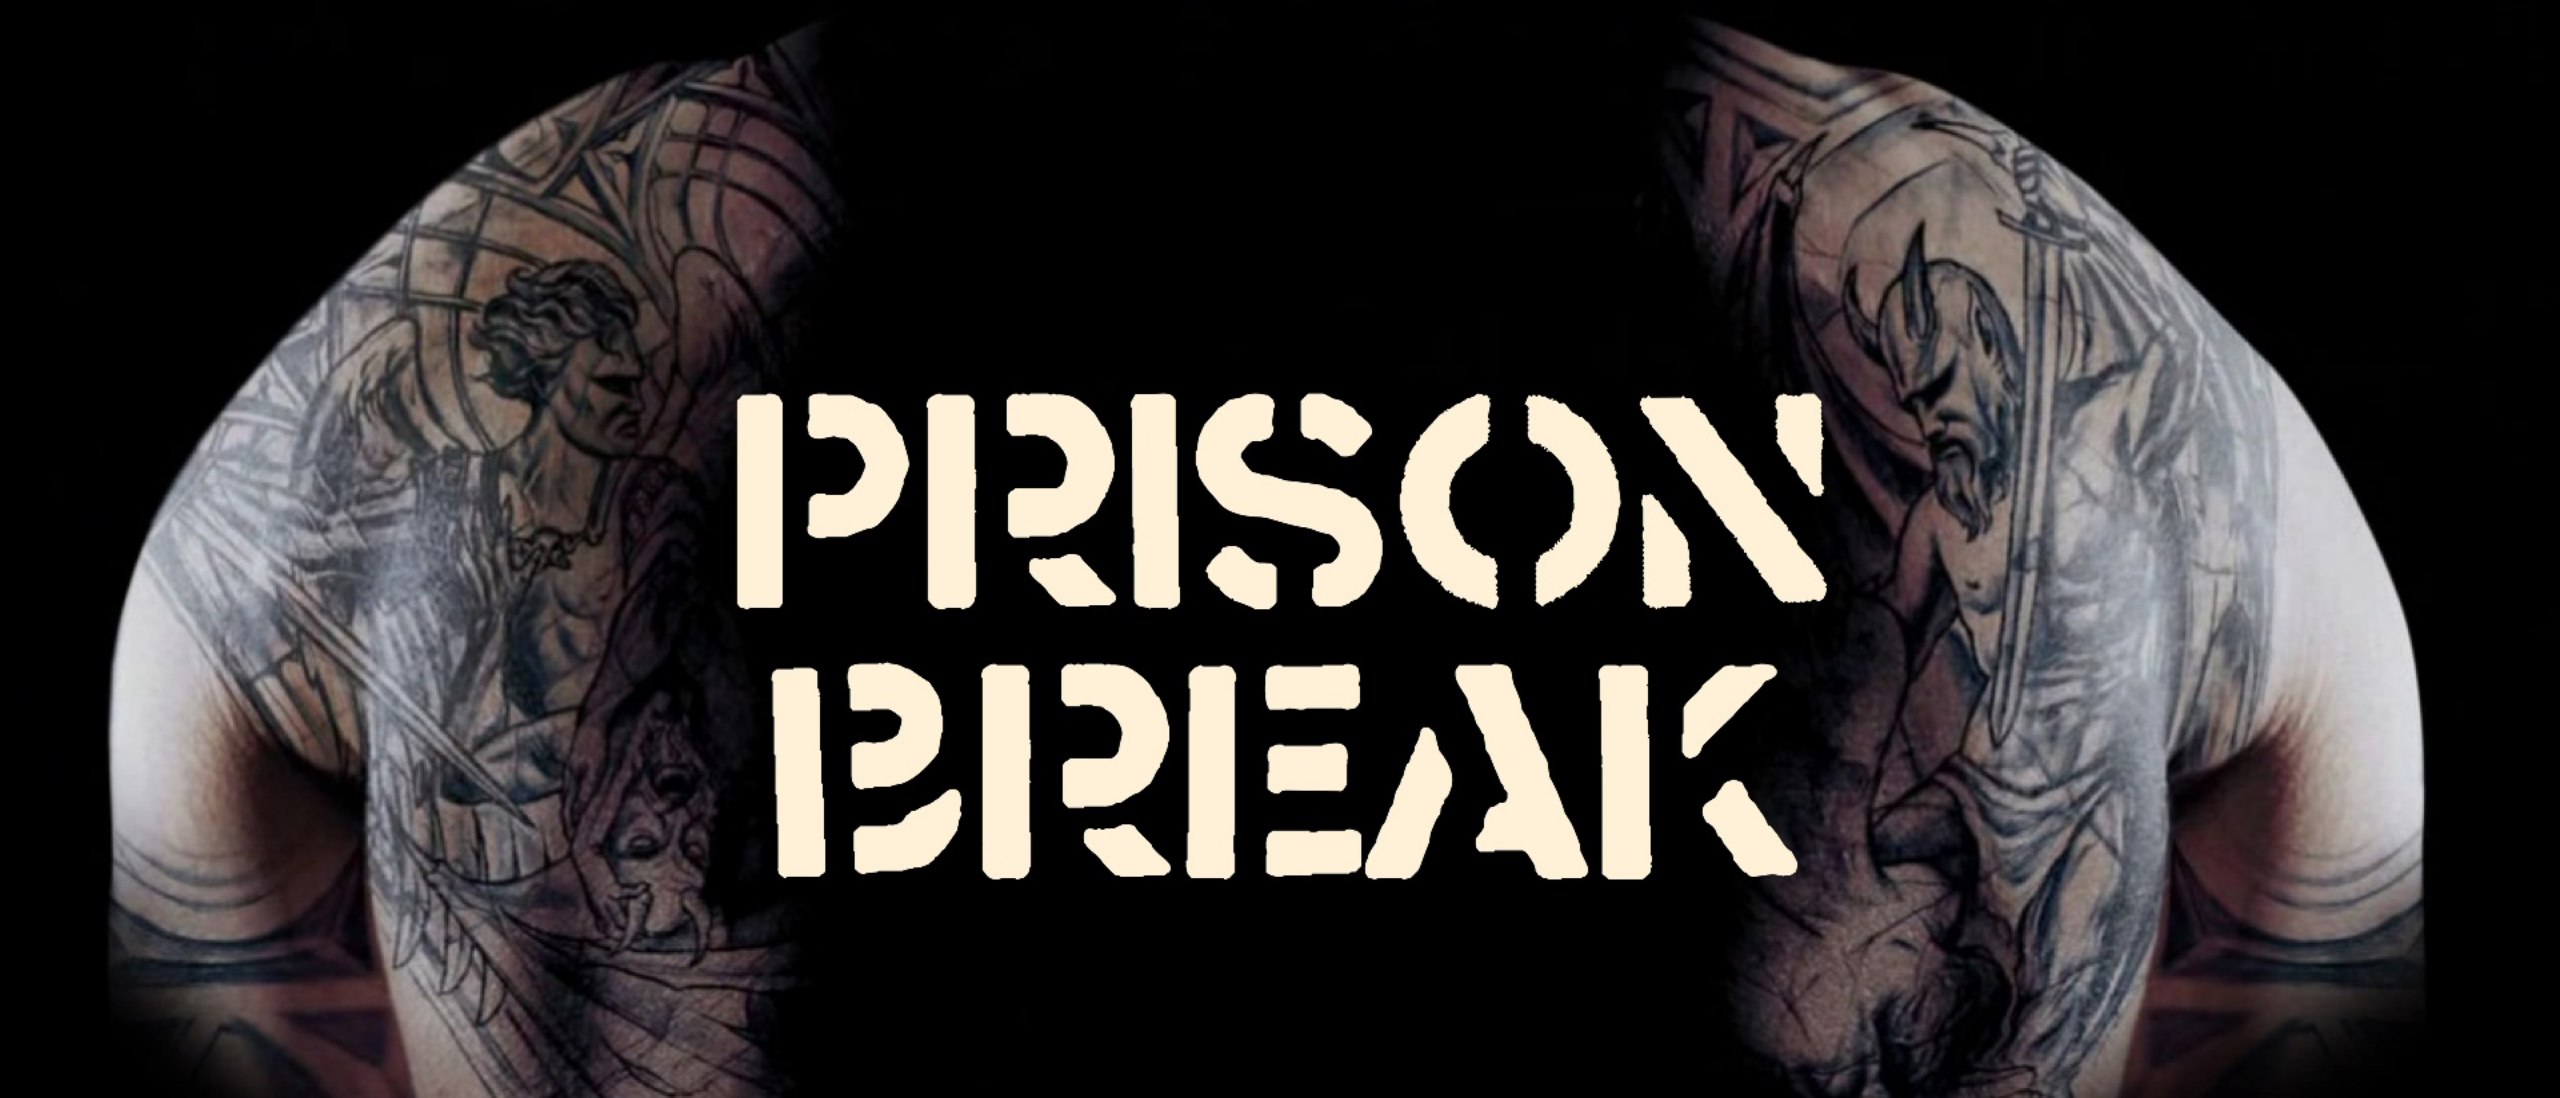 watch prison break season 5 episode 1 watch online